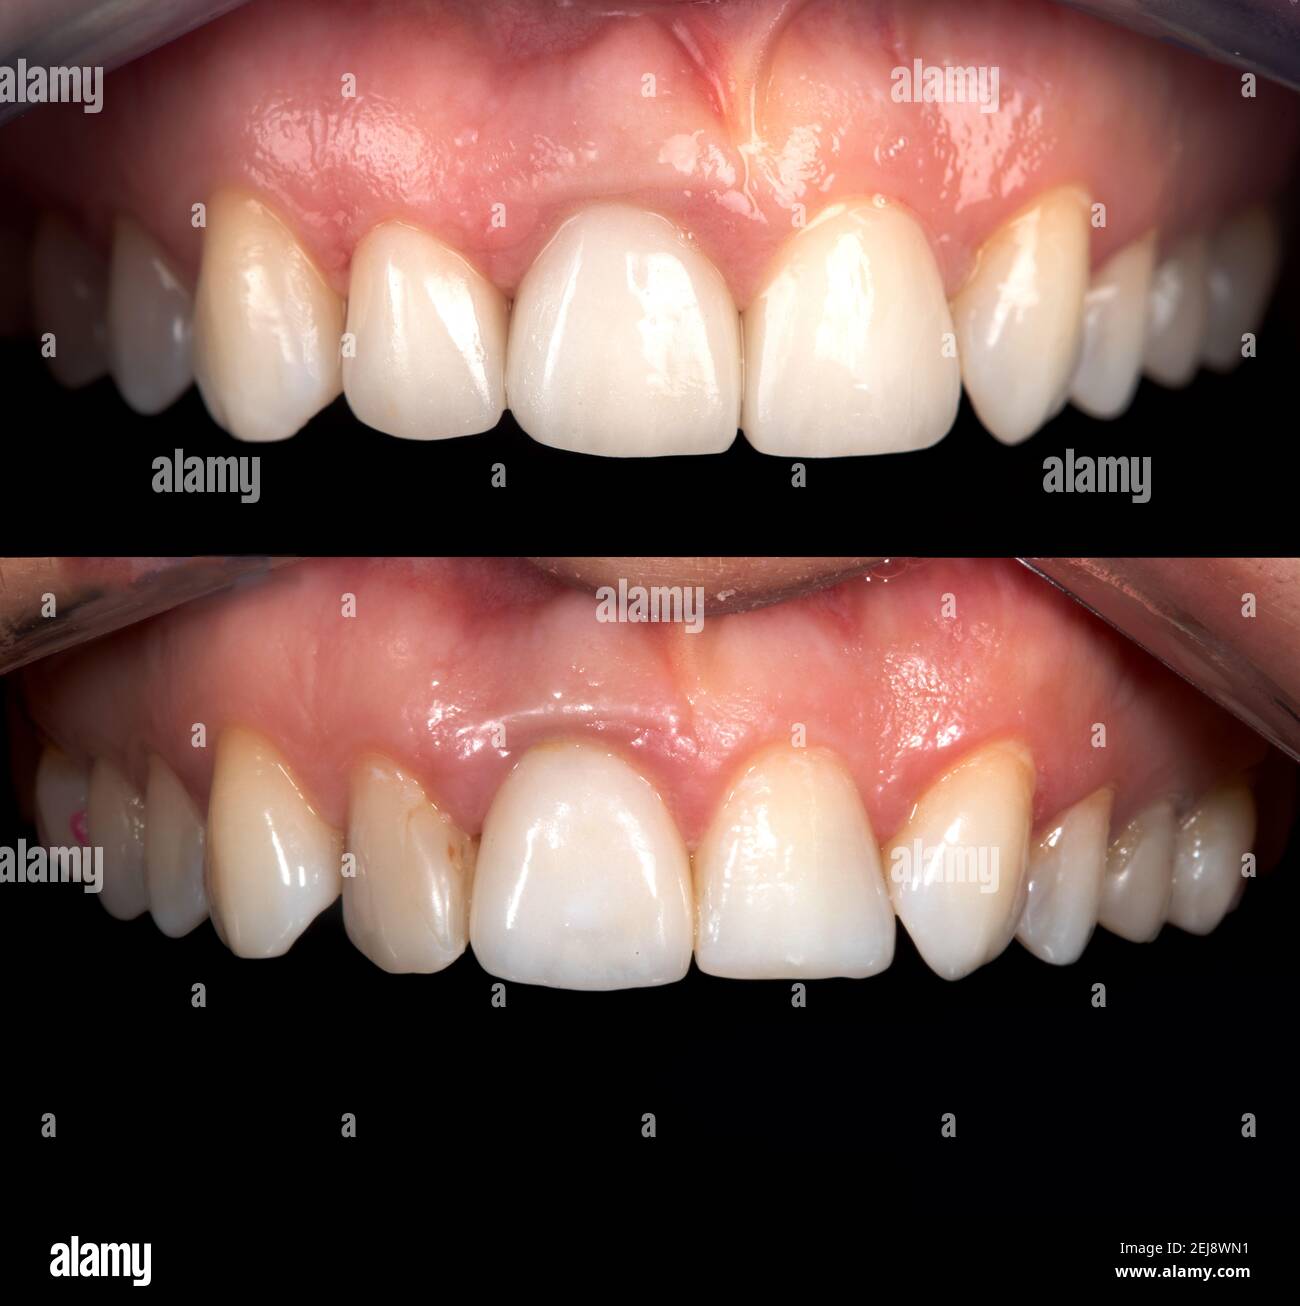 Perfektes Lächeln vor und nach Bleaching Verfahren Bleaching von Zirkonbogen keramische Prothesen Implantate Kronen. Zahnärztliche Restaurierung Behandlung Klinik Pat Stockfoto